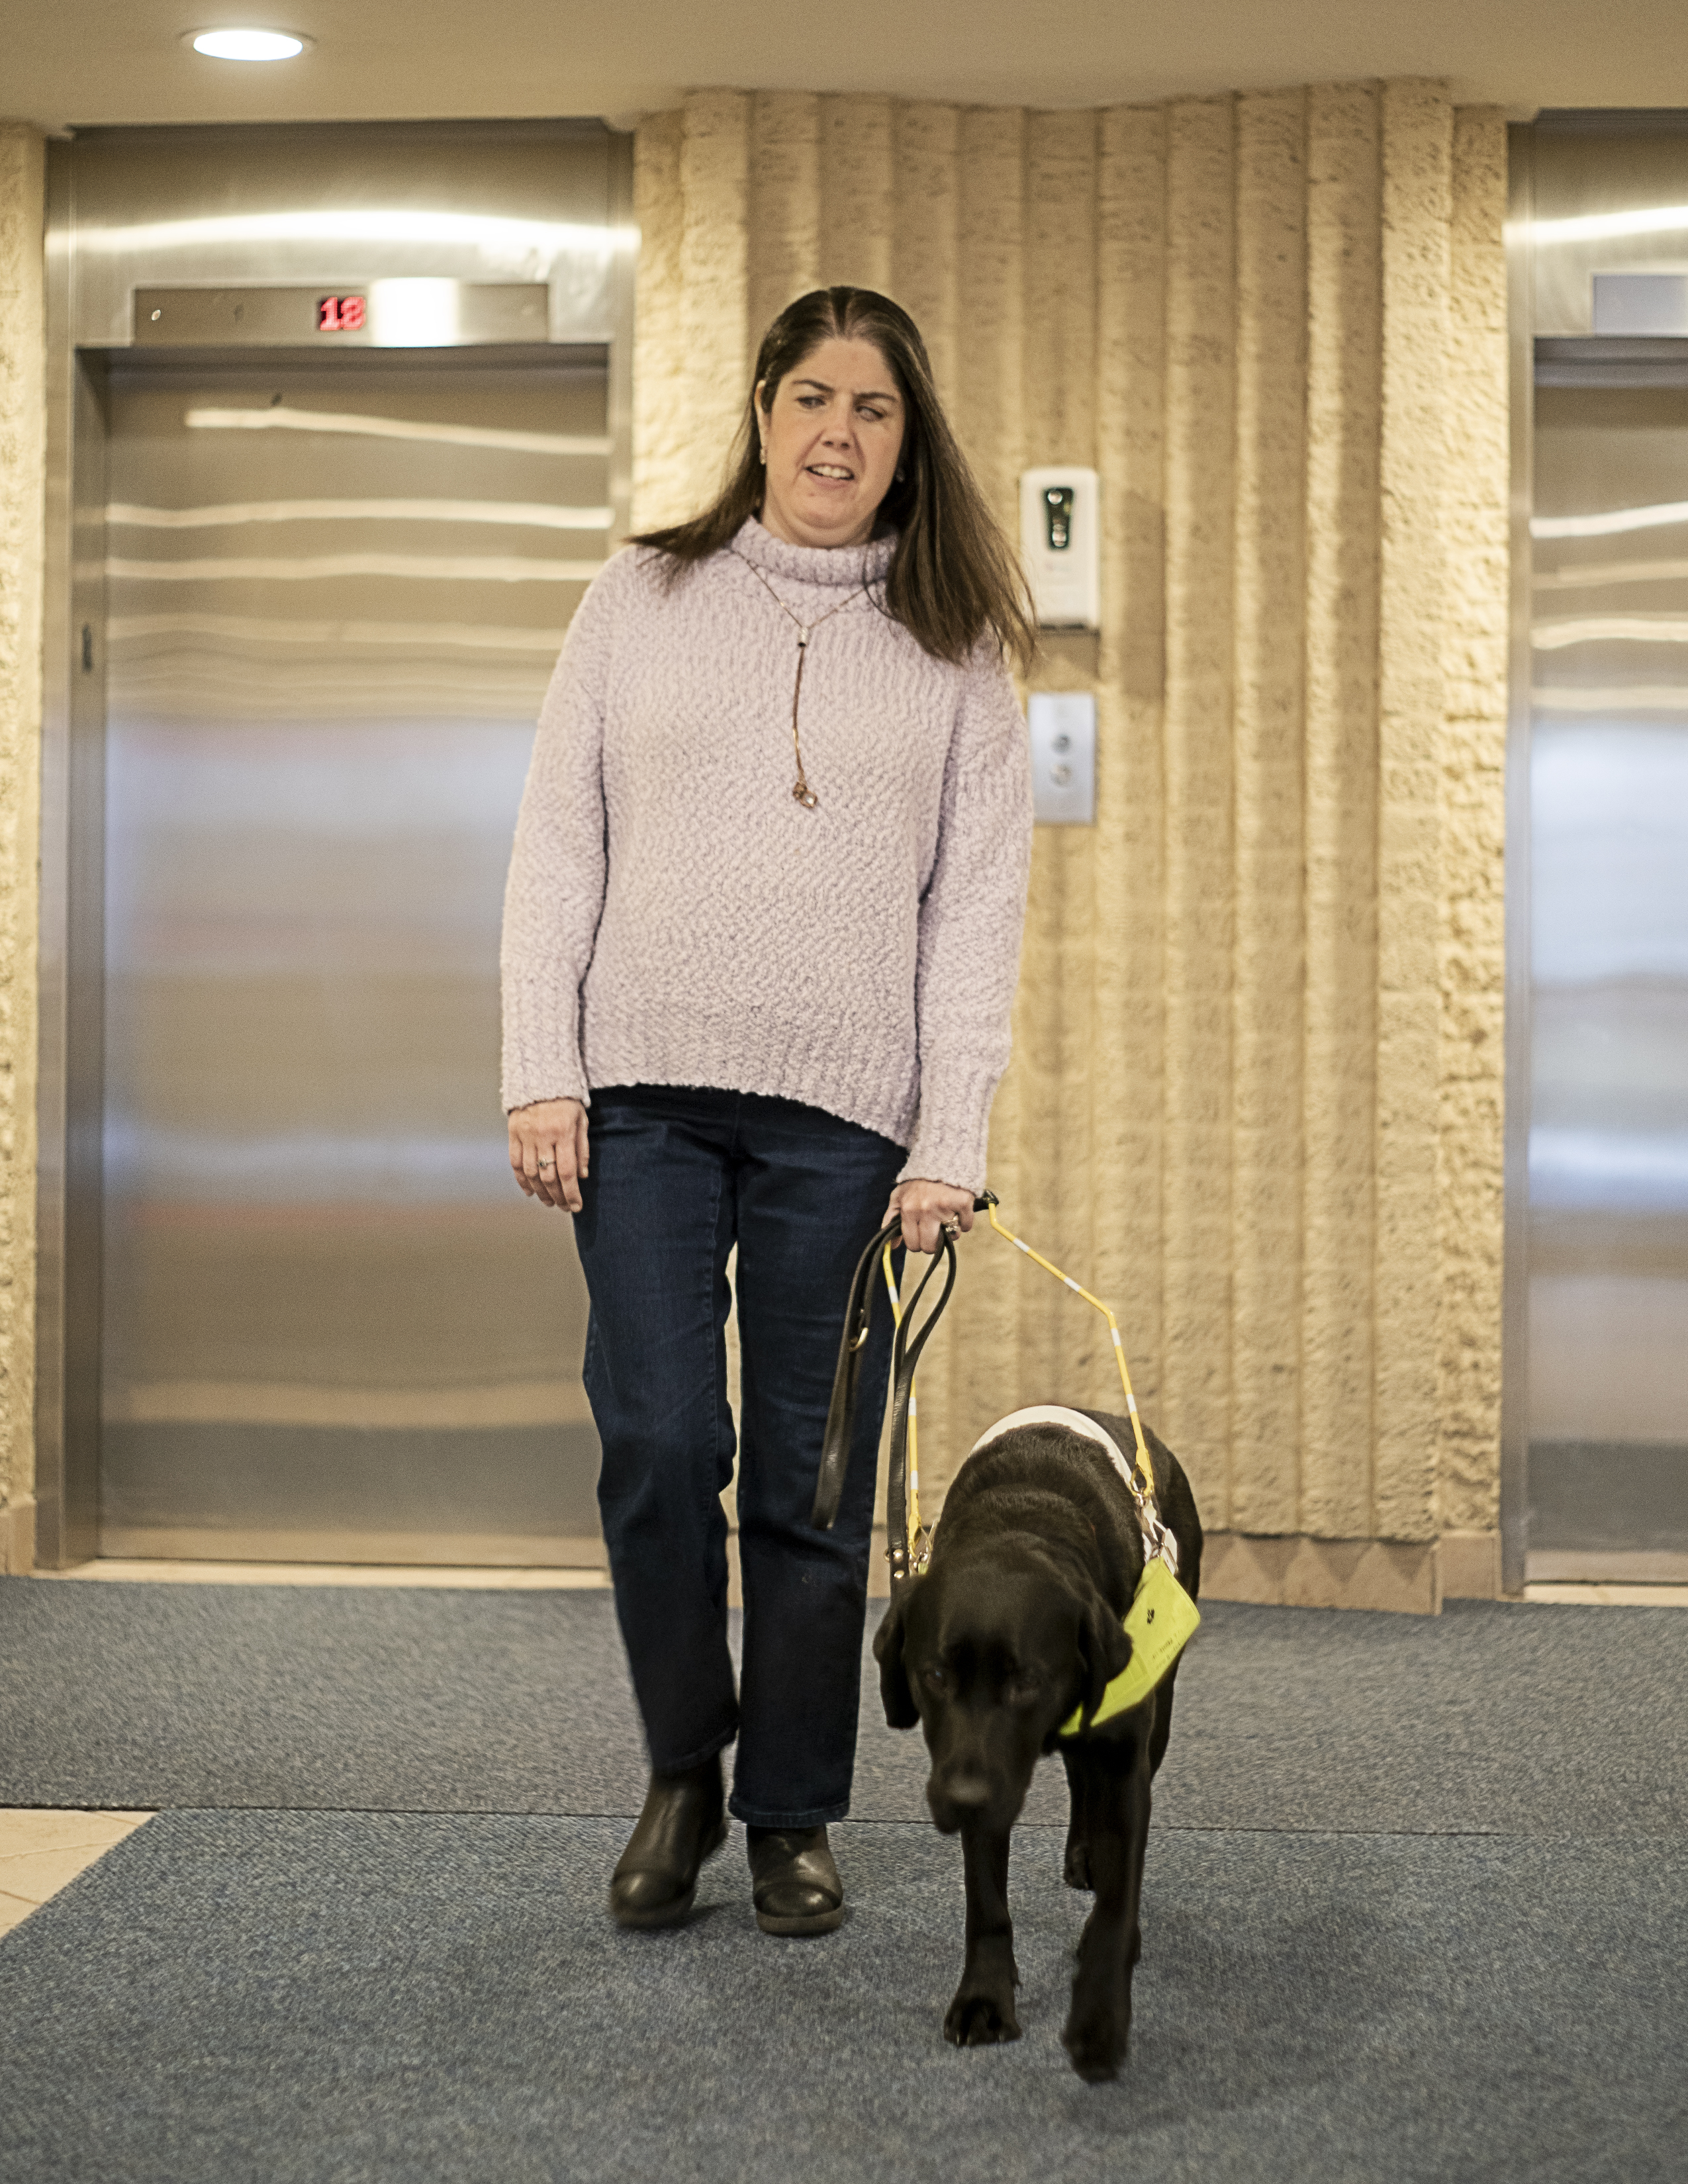 Karoline et son chien-guide noir, Raven, sortent du hall d’un immeuble. Derrière eux se trouve une rangée d’ascenseurs.